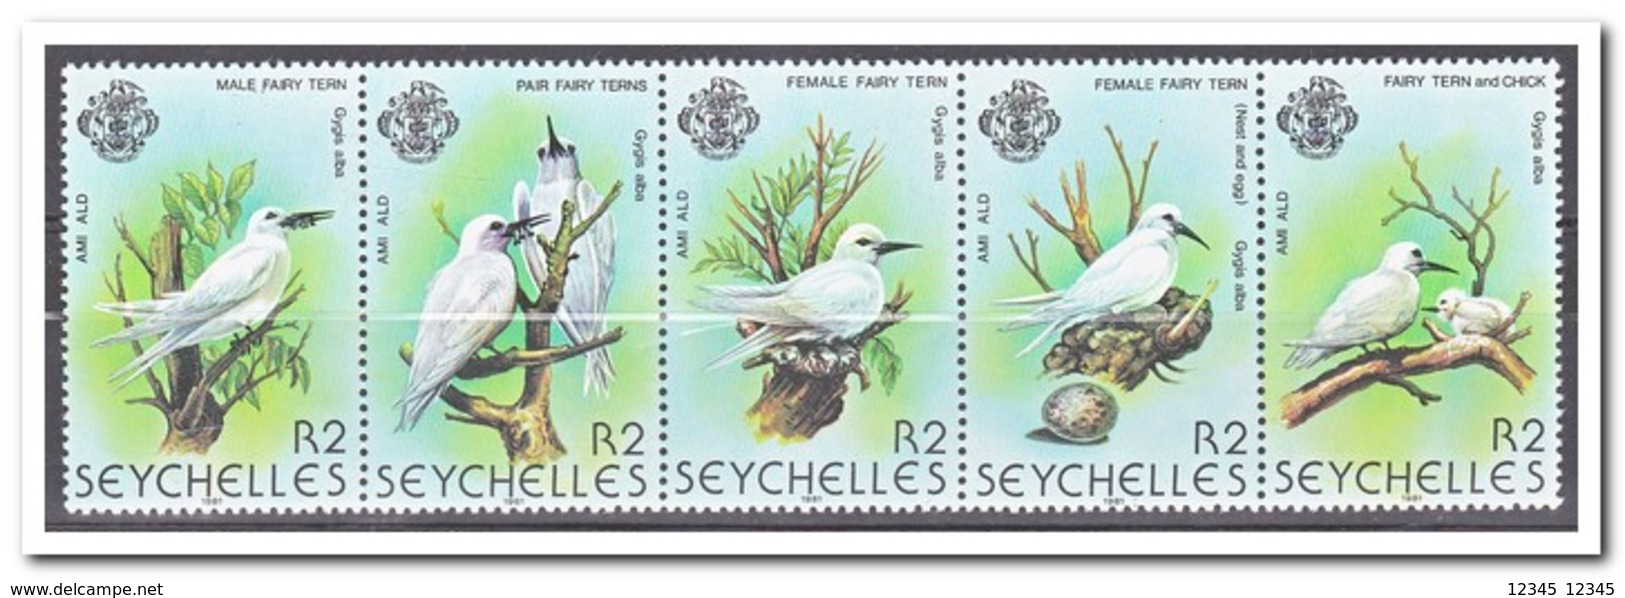 Seychellen 1981, Postfris MNH, Birds - Seychellen (1976-...)